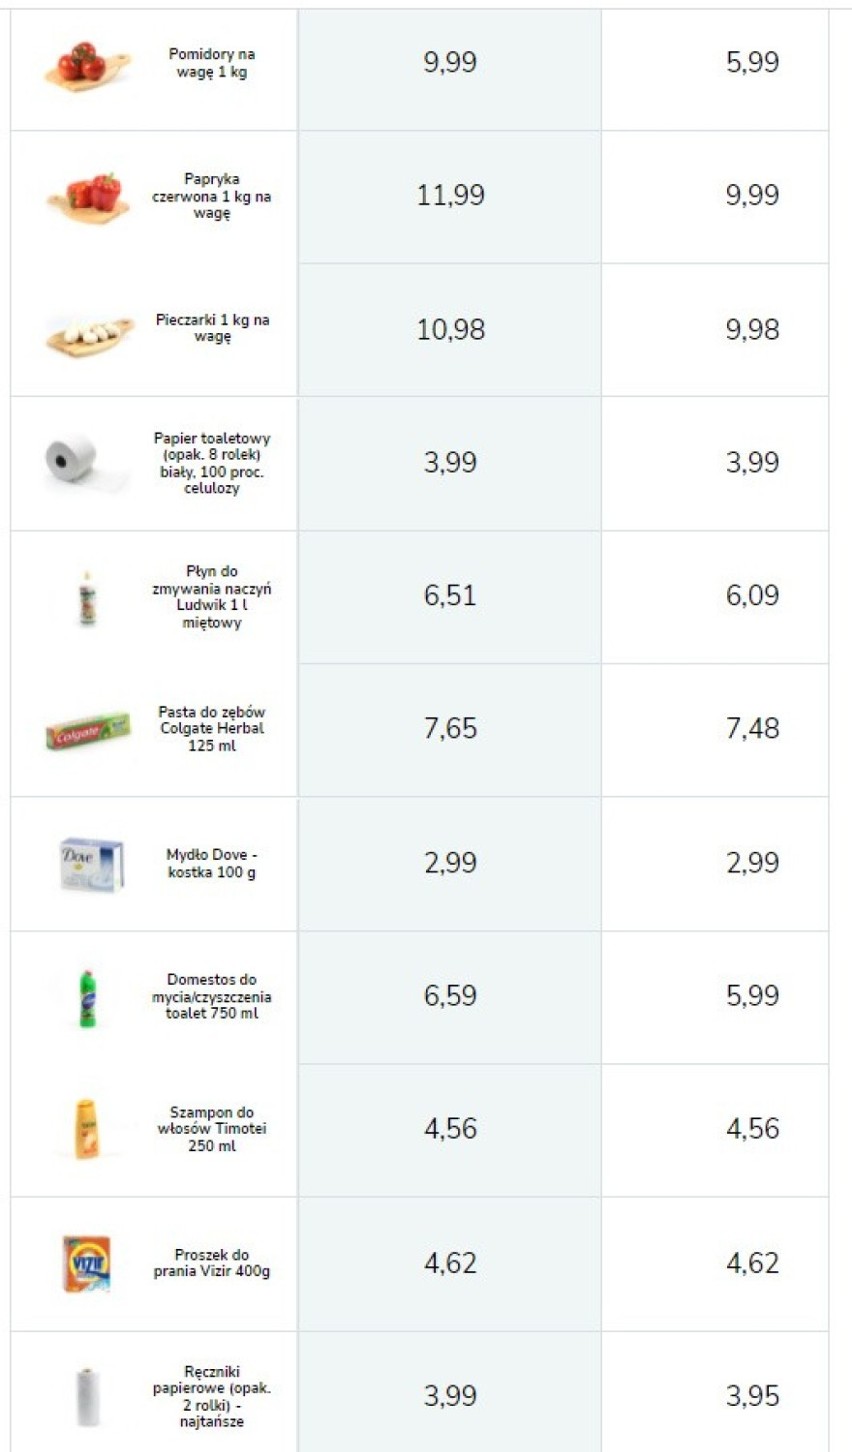 Przykładowe ceny produktów w sklepach Biedronka.